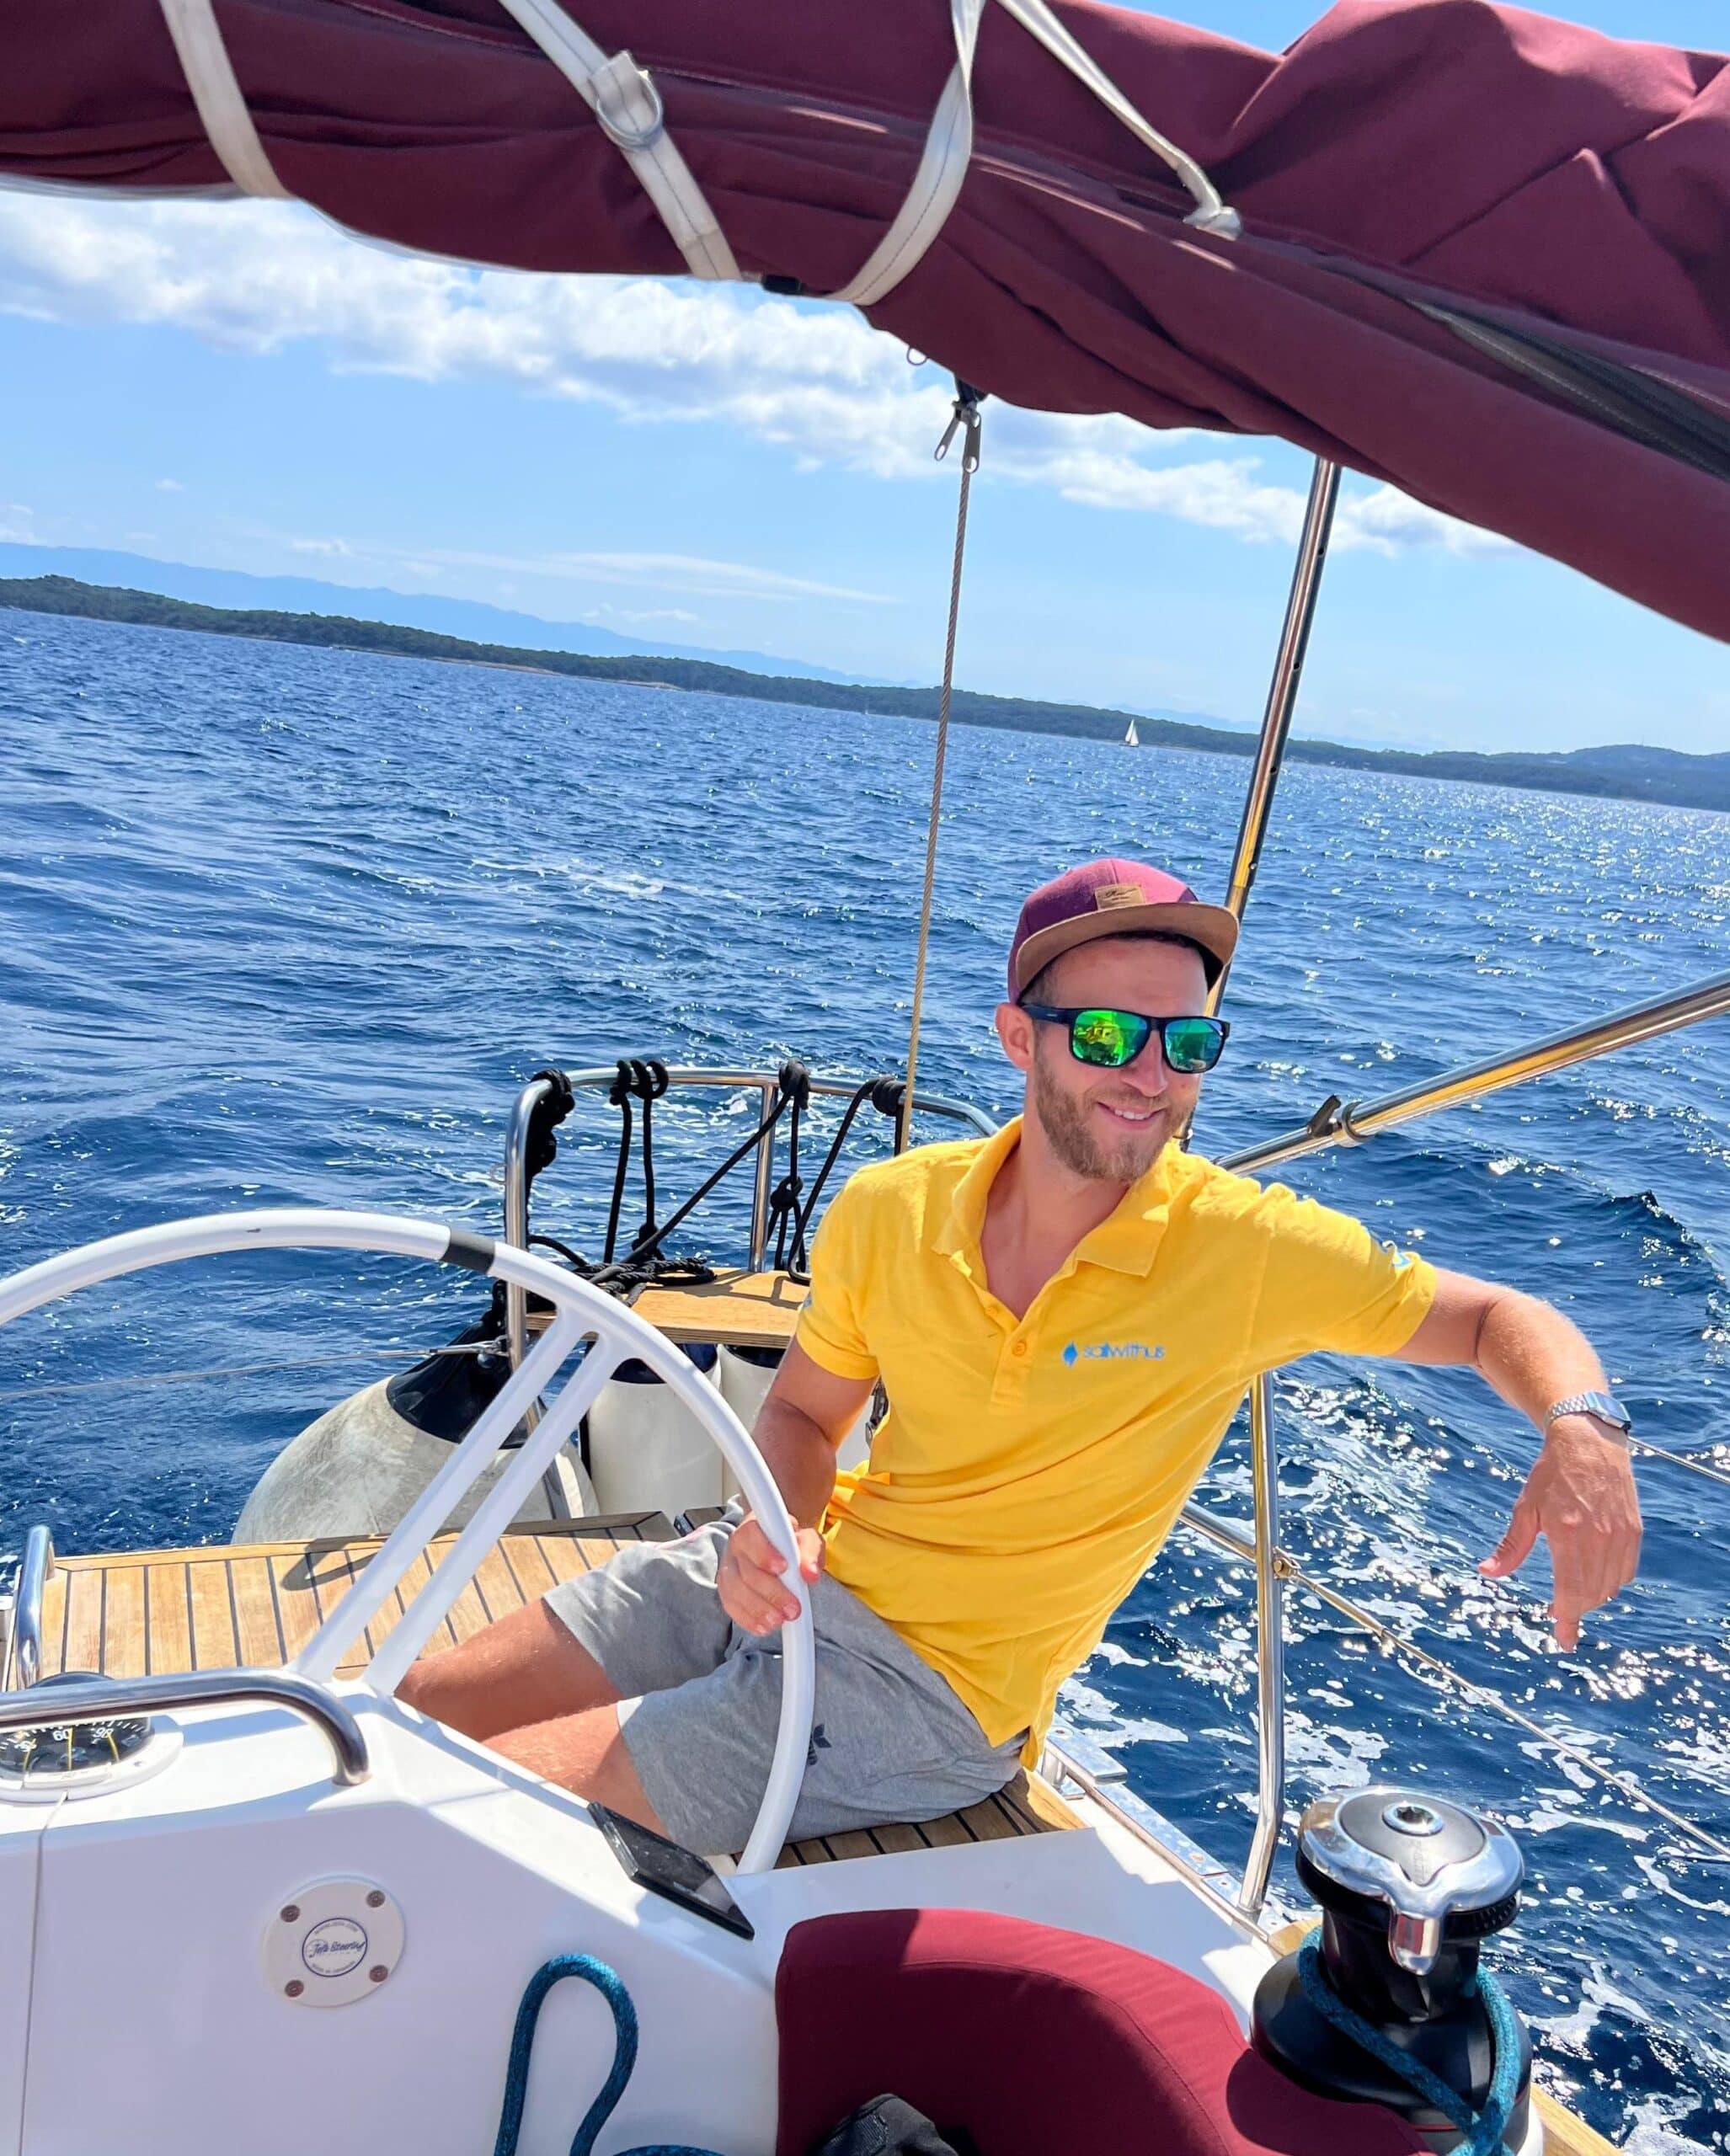 Ein Mann in gelbem Hemd und Sonnenbrille sitzt am Steuer eines Segelboots. Der Kapitän lächelt und blickt zum Wasser, eine Hand liegt am Steuerrad, die andere ruht auf der Rückenlehne des Sitzes. Das Boot segelt an einem sonnigen Tag mit blauem Himmel und ruhigem Wasser.